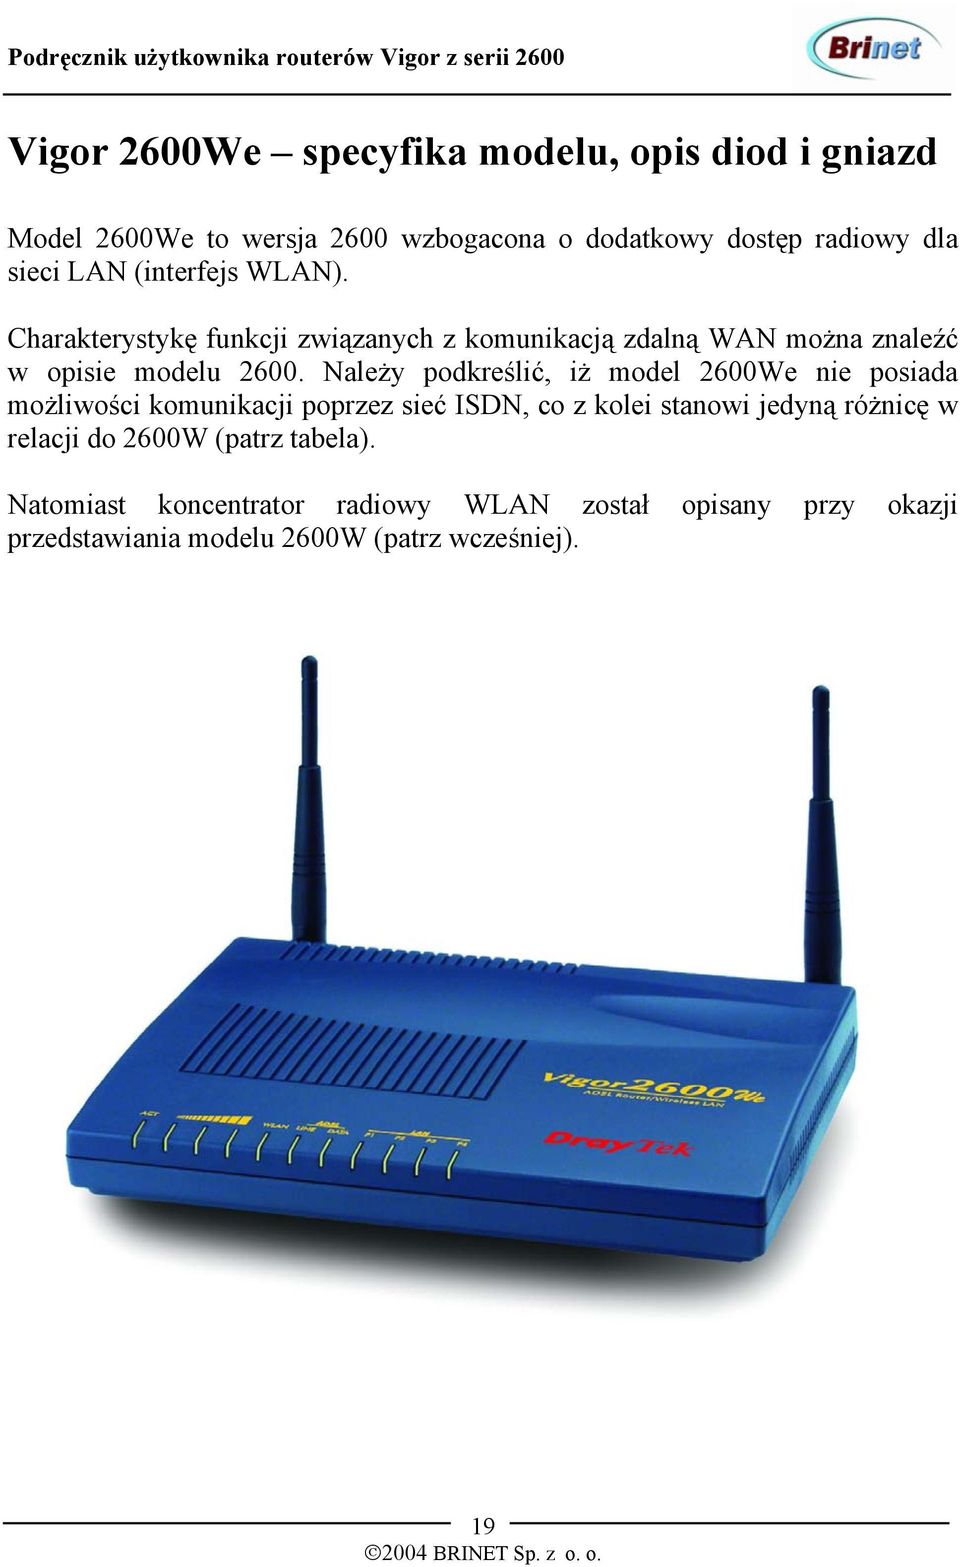 Należy podkreślić, iż model 2600We nie posiada możliwości komunikacji poprzez sieć ISDN, co z kolei stanowi jedyną różnicę w